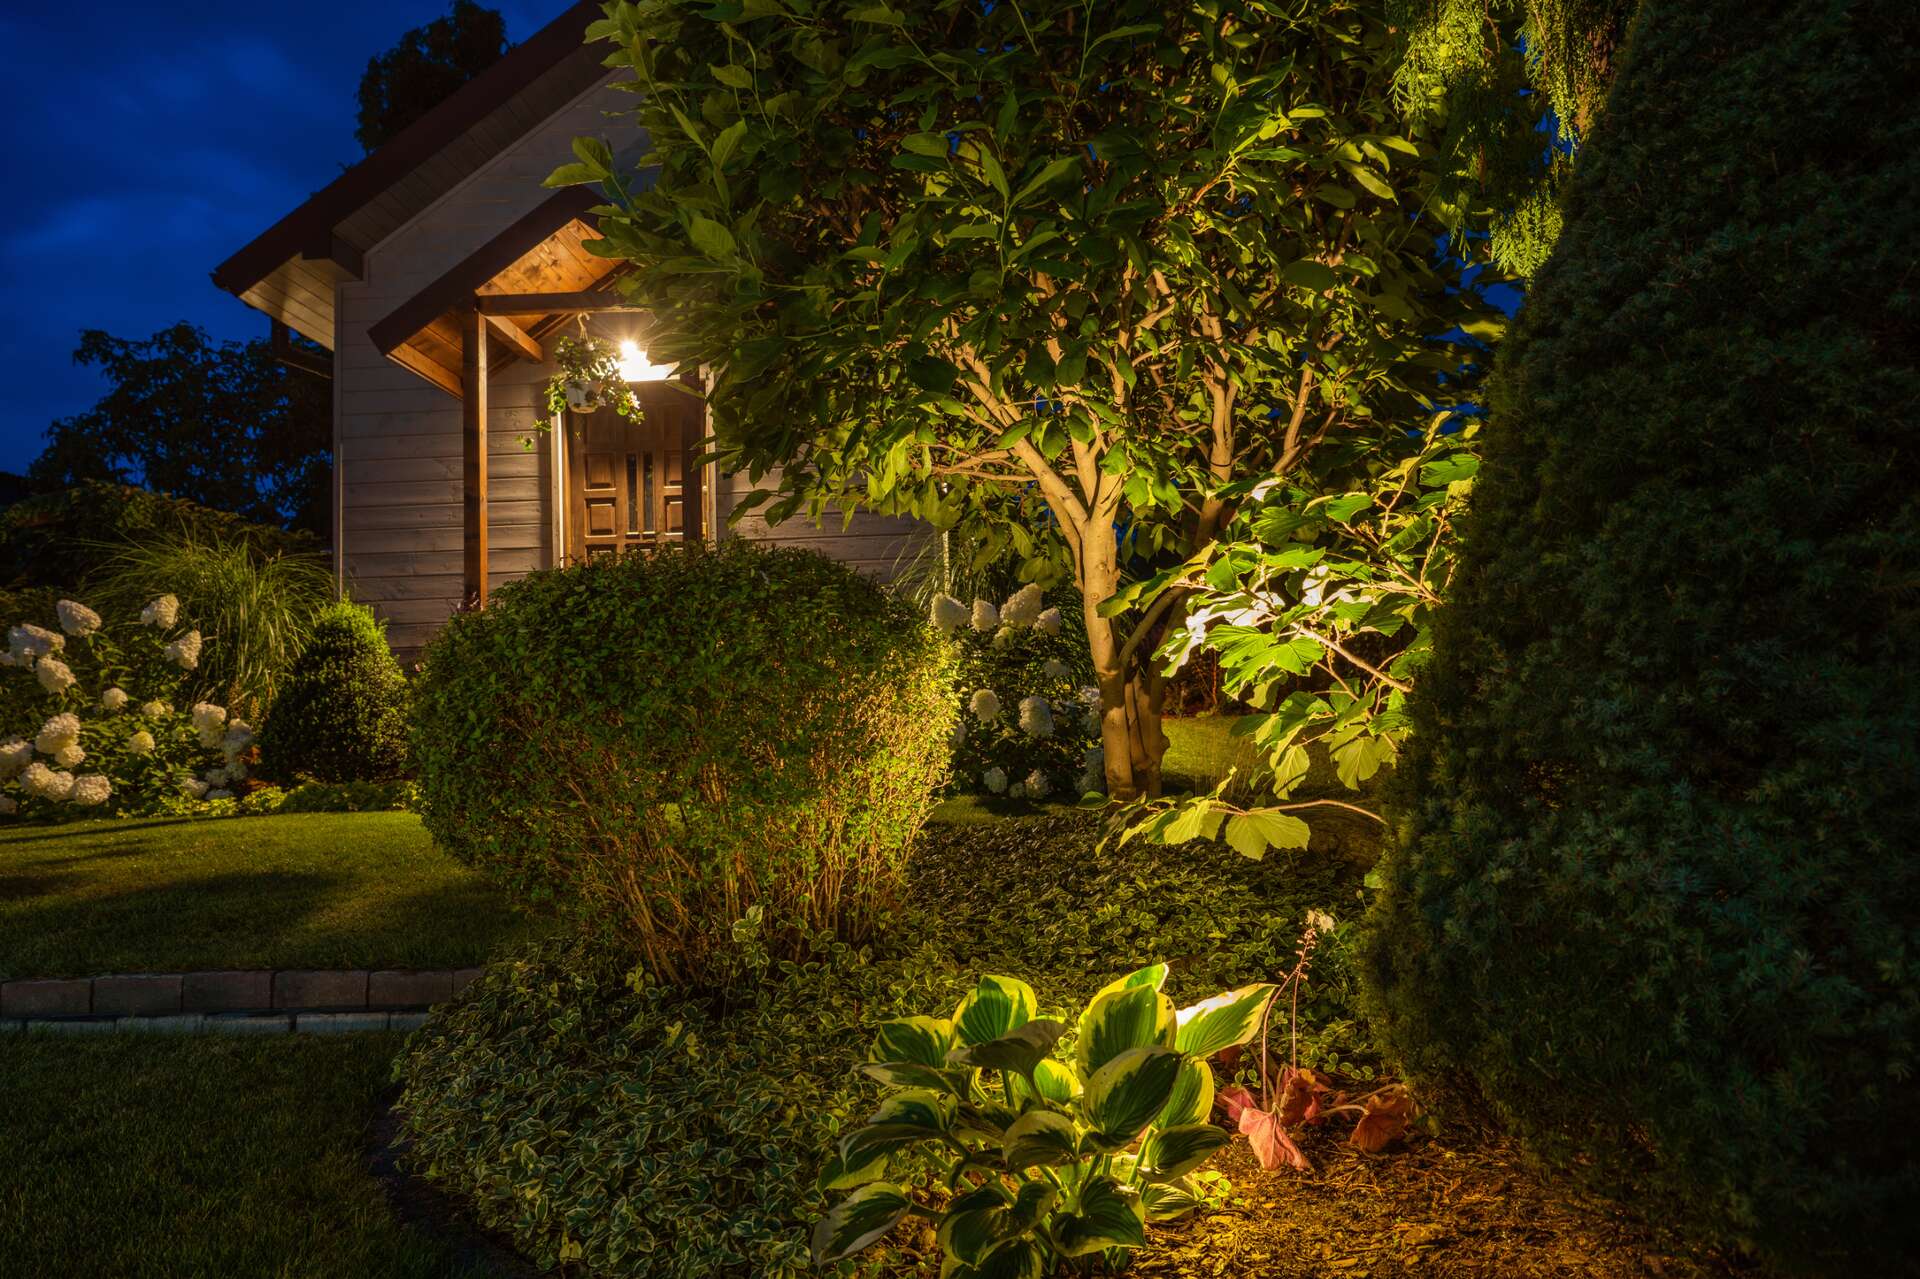 Comment installer un éclairage extérieur pour votre jardin ?